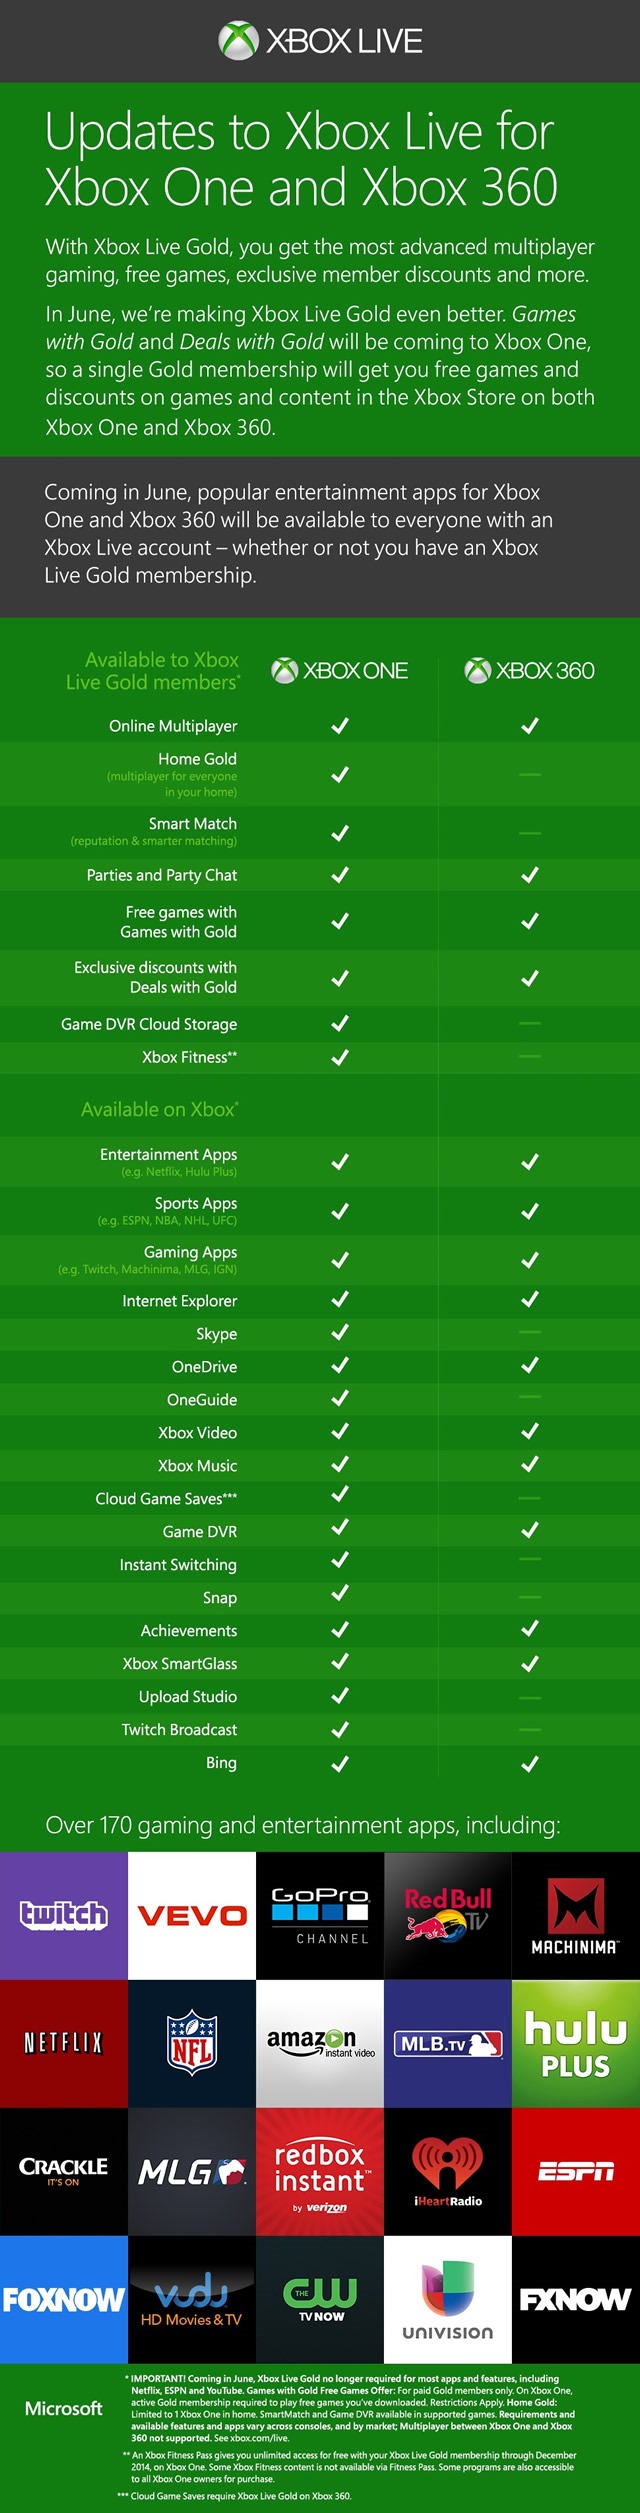 微软宣布低价无 Kinect 捆绑版 Xbox One，Xbox 娱乐应用不再要求金会员